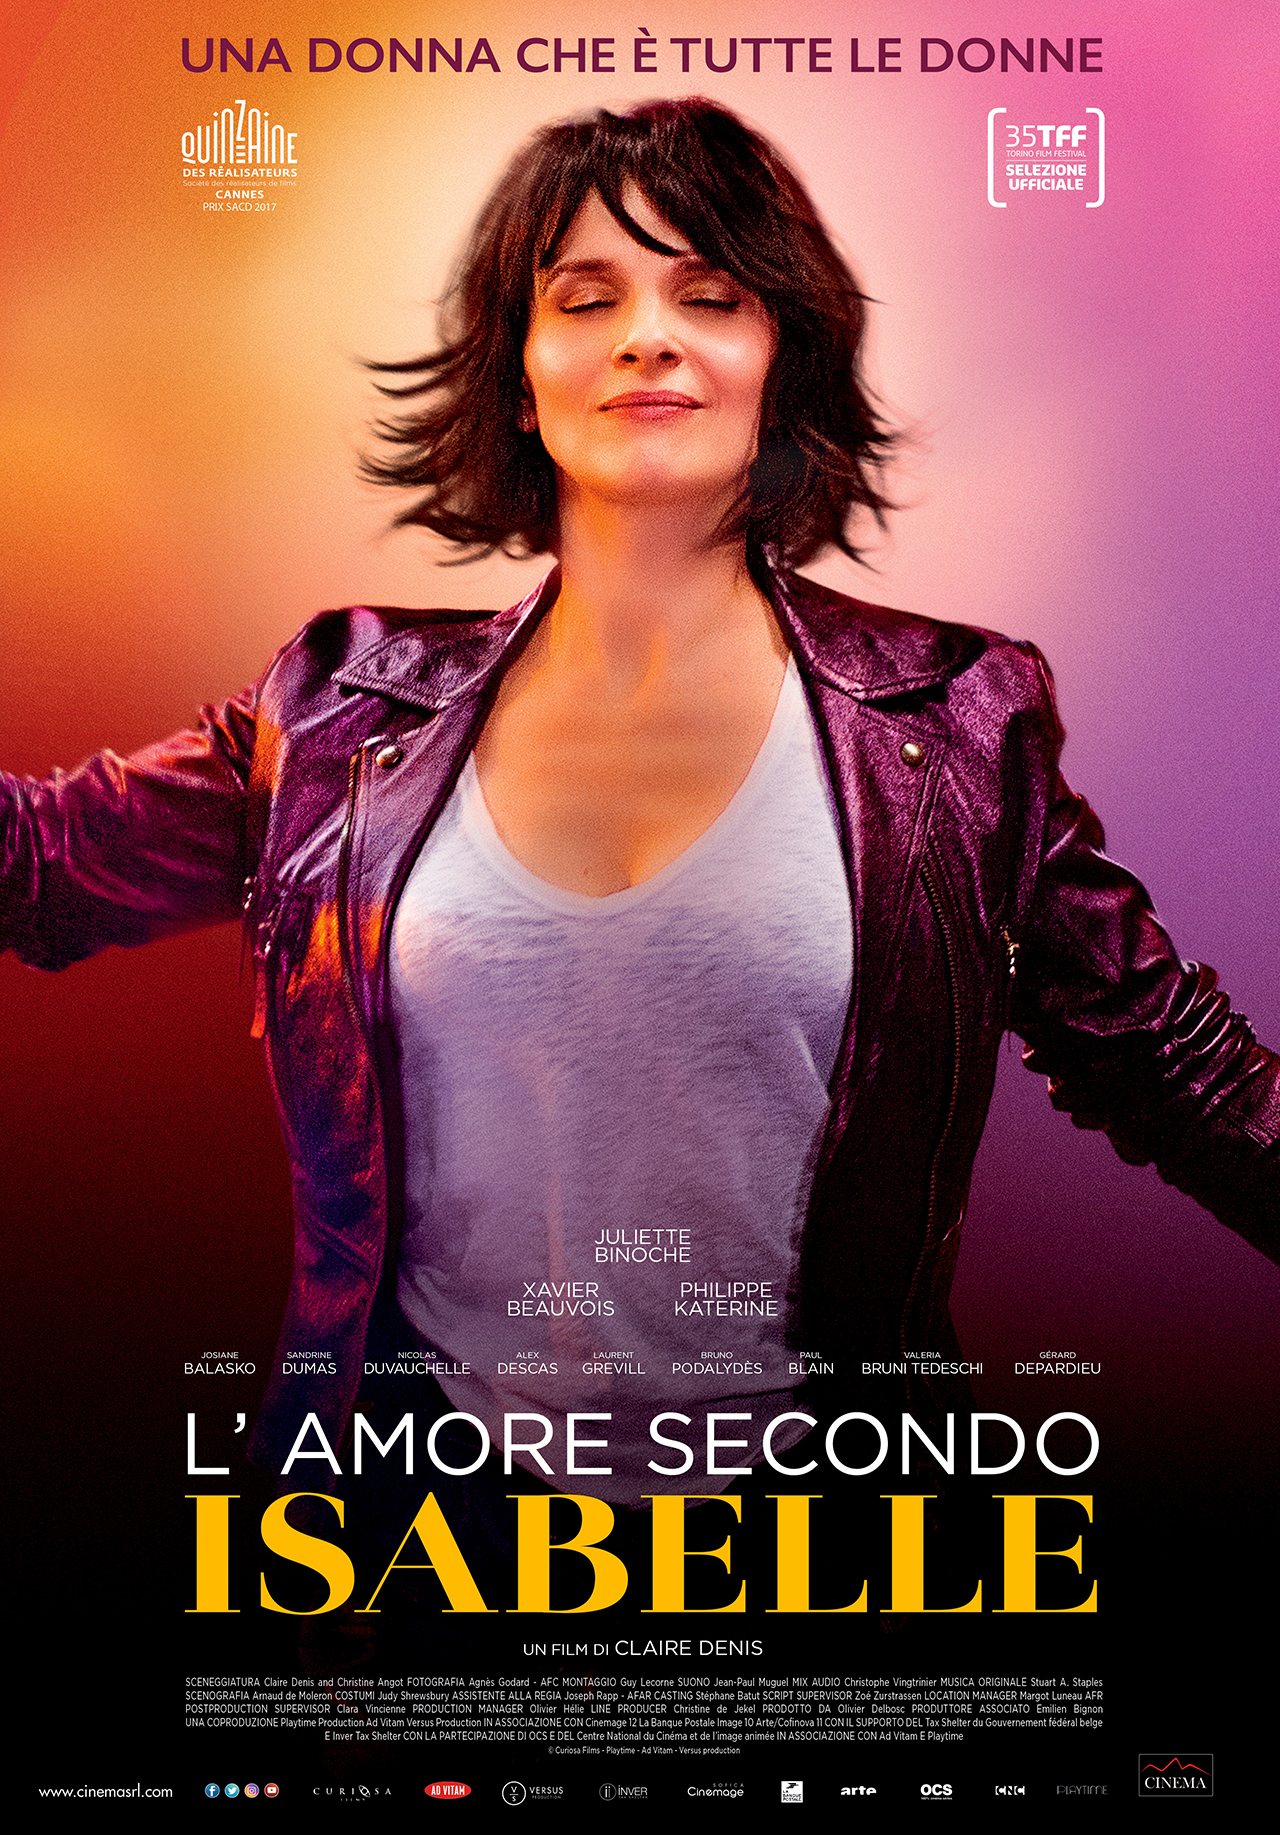 In foto Juliette Binoche (60 anni) Dall'articolo: L'amore secondo Isabelle, il poster del film.